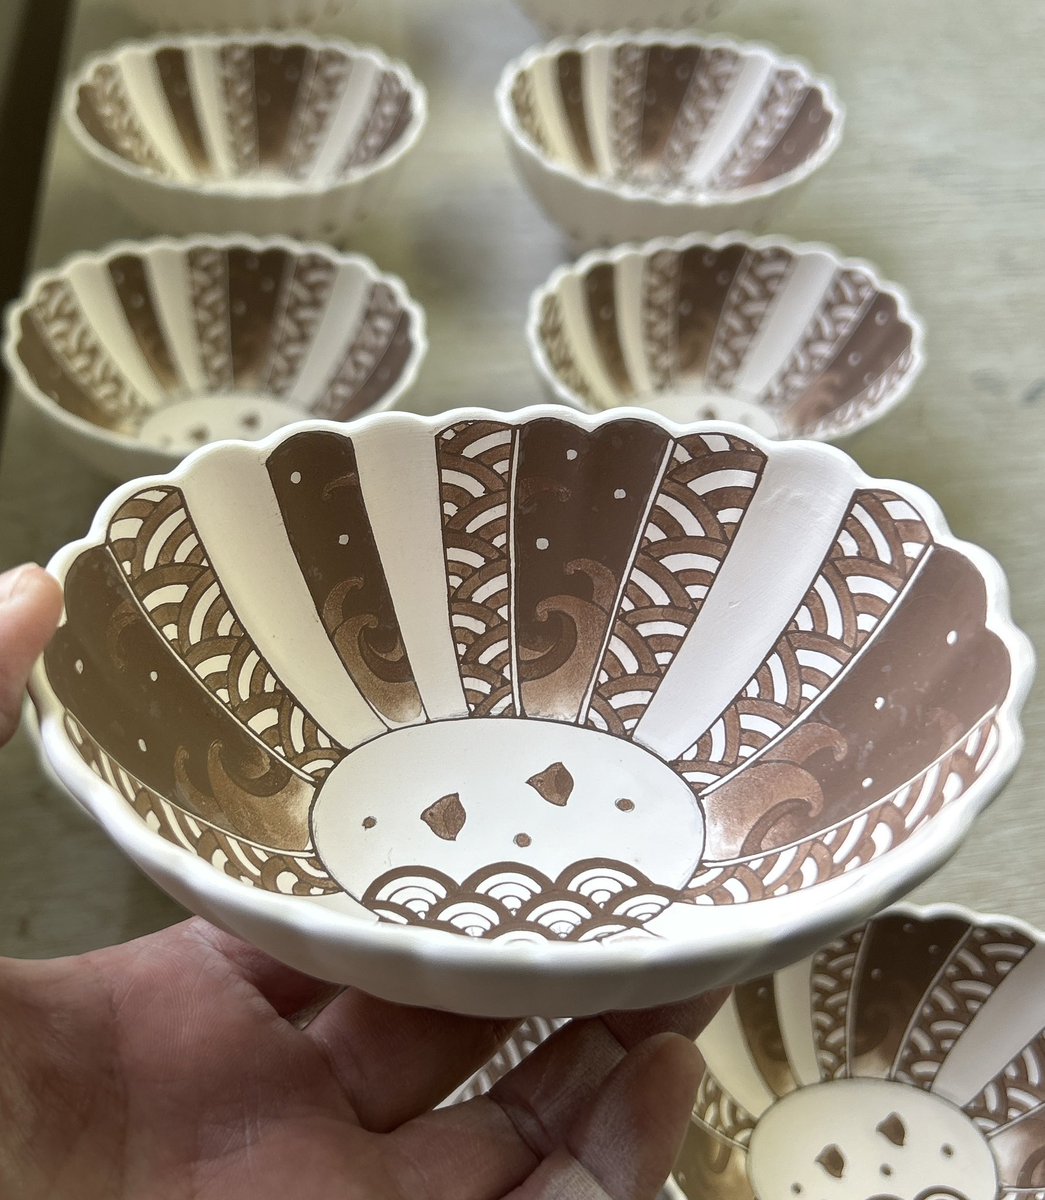 そんでもって'釉掛け'
年末から描き溜めた器たちに窯焚き支度を施します。
これは手の中サイズの小鉢、波千鳥の絵柄です。かわいがってもらえる焼き上がりに仕上がるといいなあ。
#琳泉窯 #手描き #小鉢 #染付 #波千鳥 #rinsengama #japan #handpainted #porcelain  #blueandwhite #pottery #smallbowl